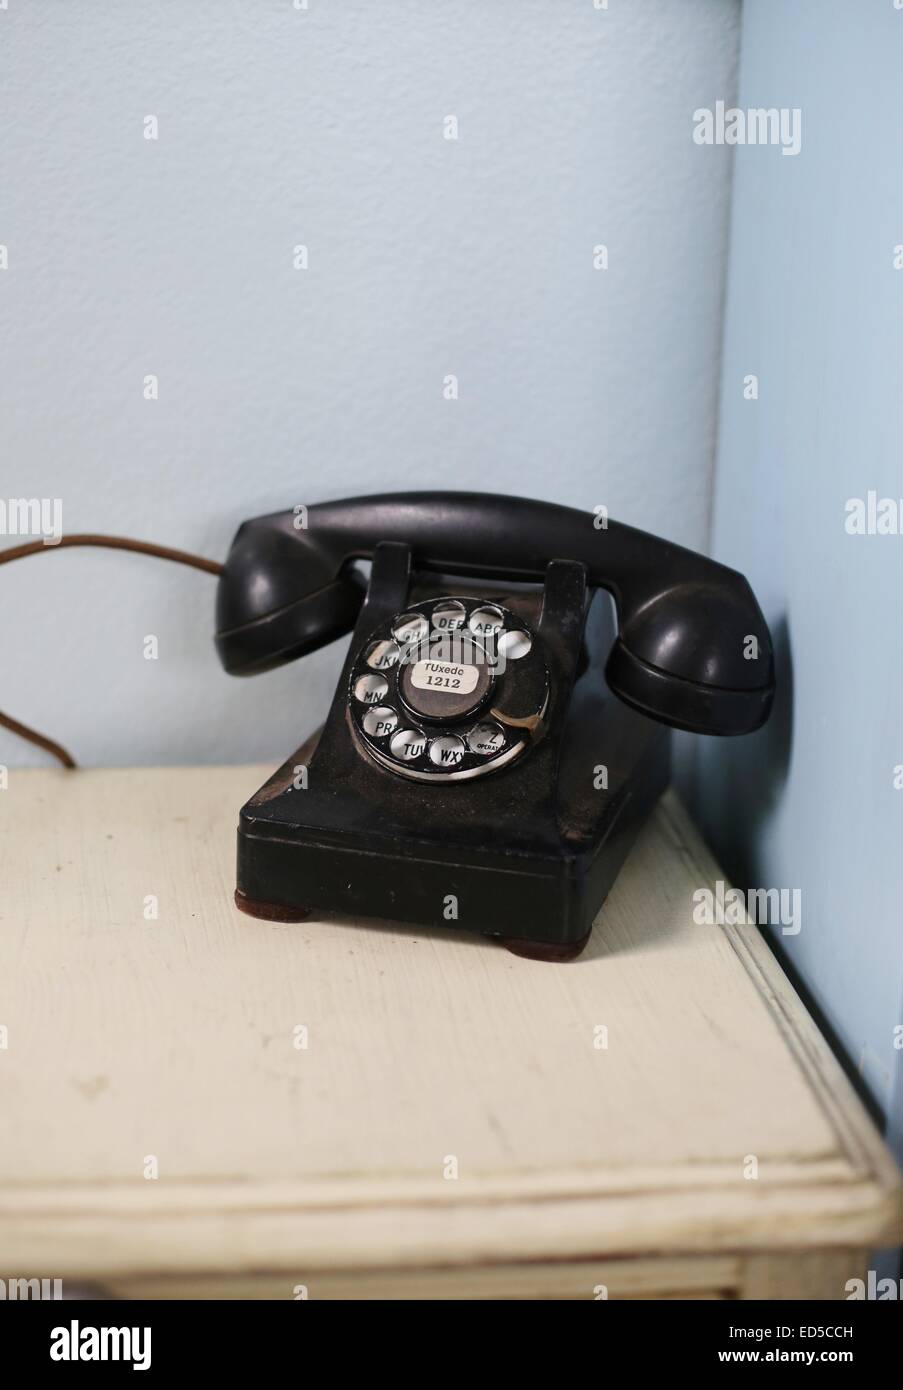 Un vieux téléphone à cadran rotatif antique. Banque D'Images